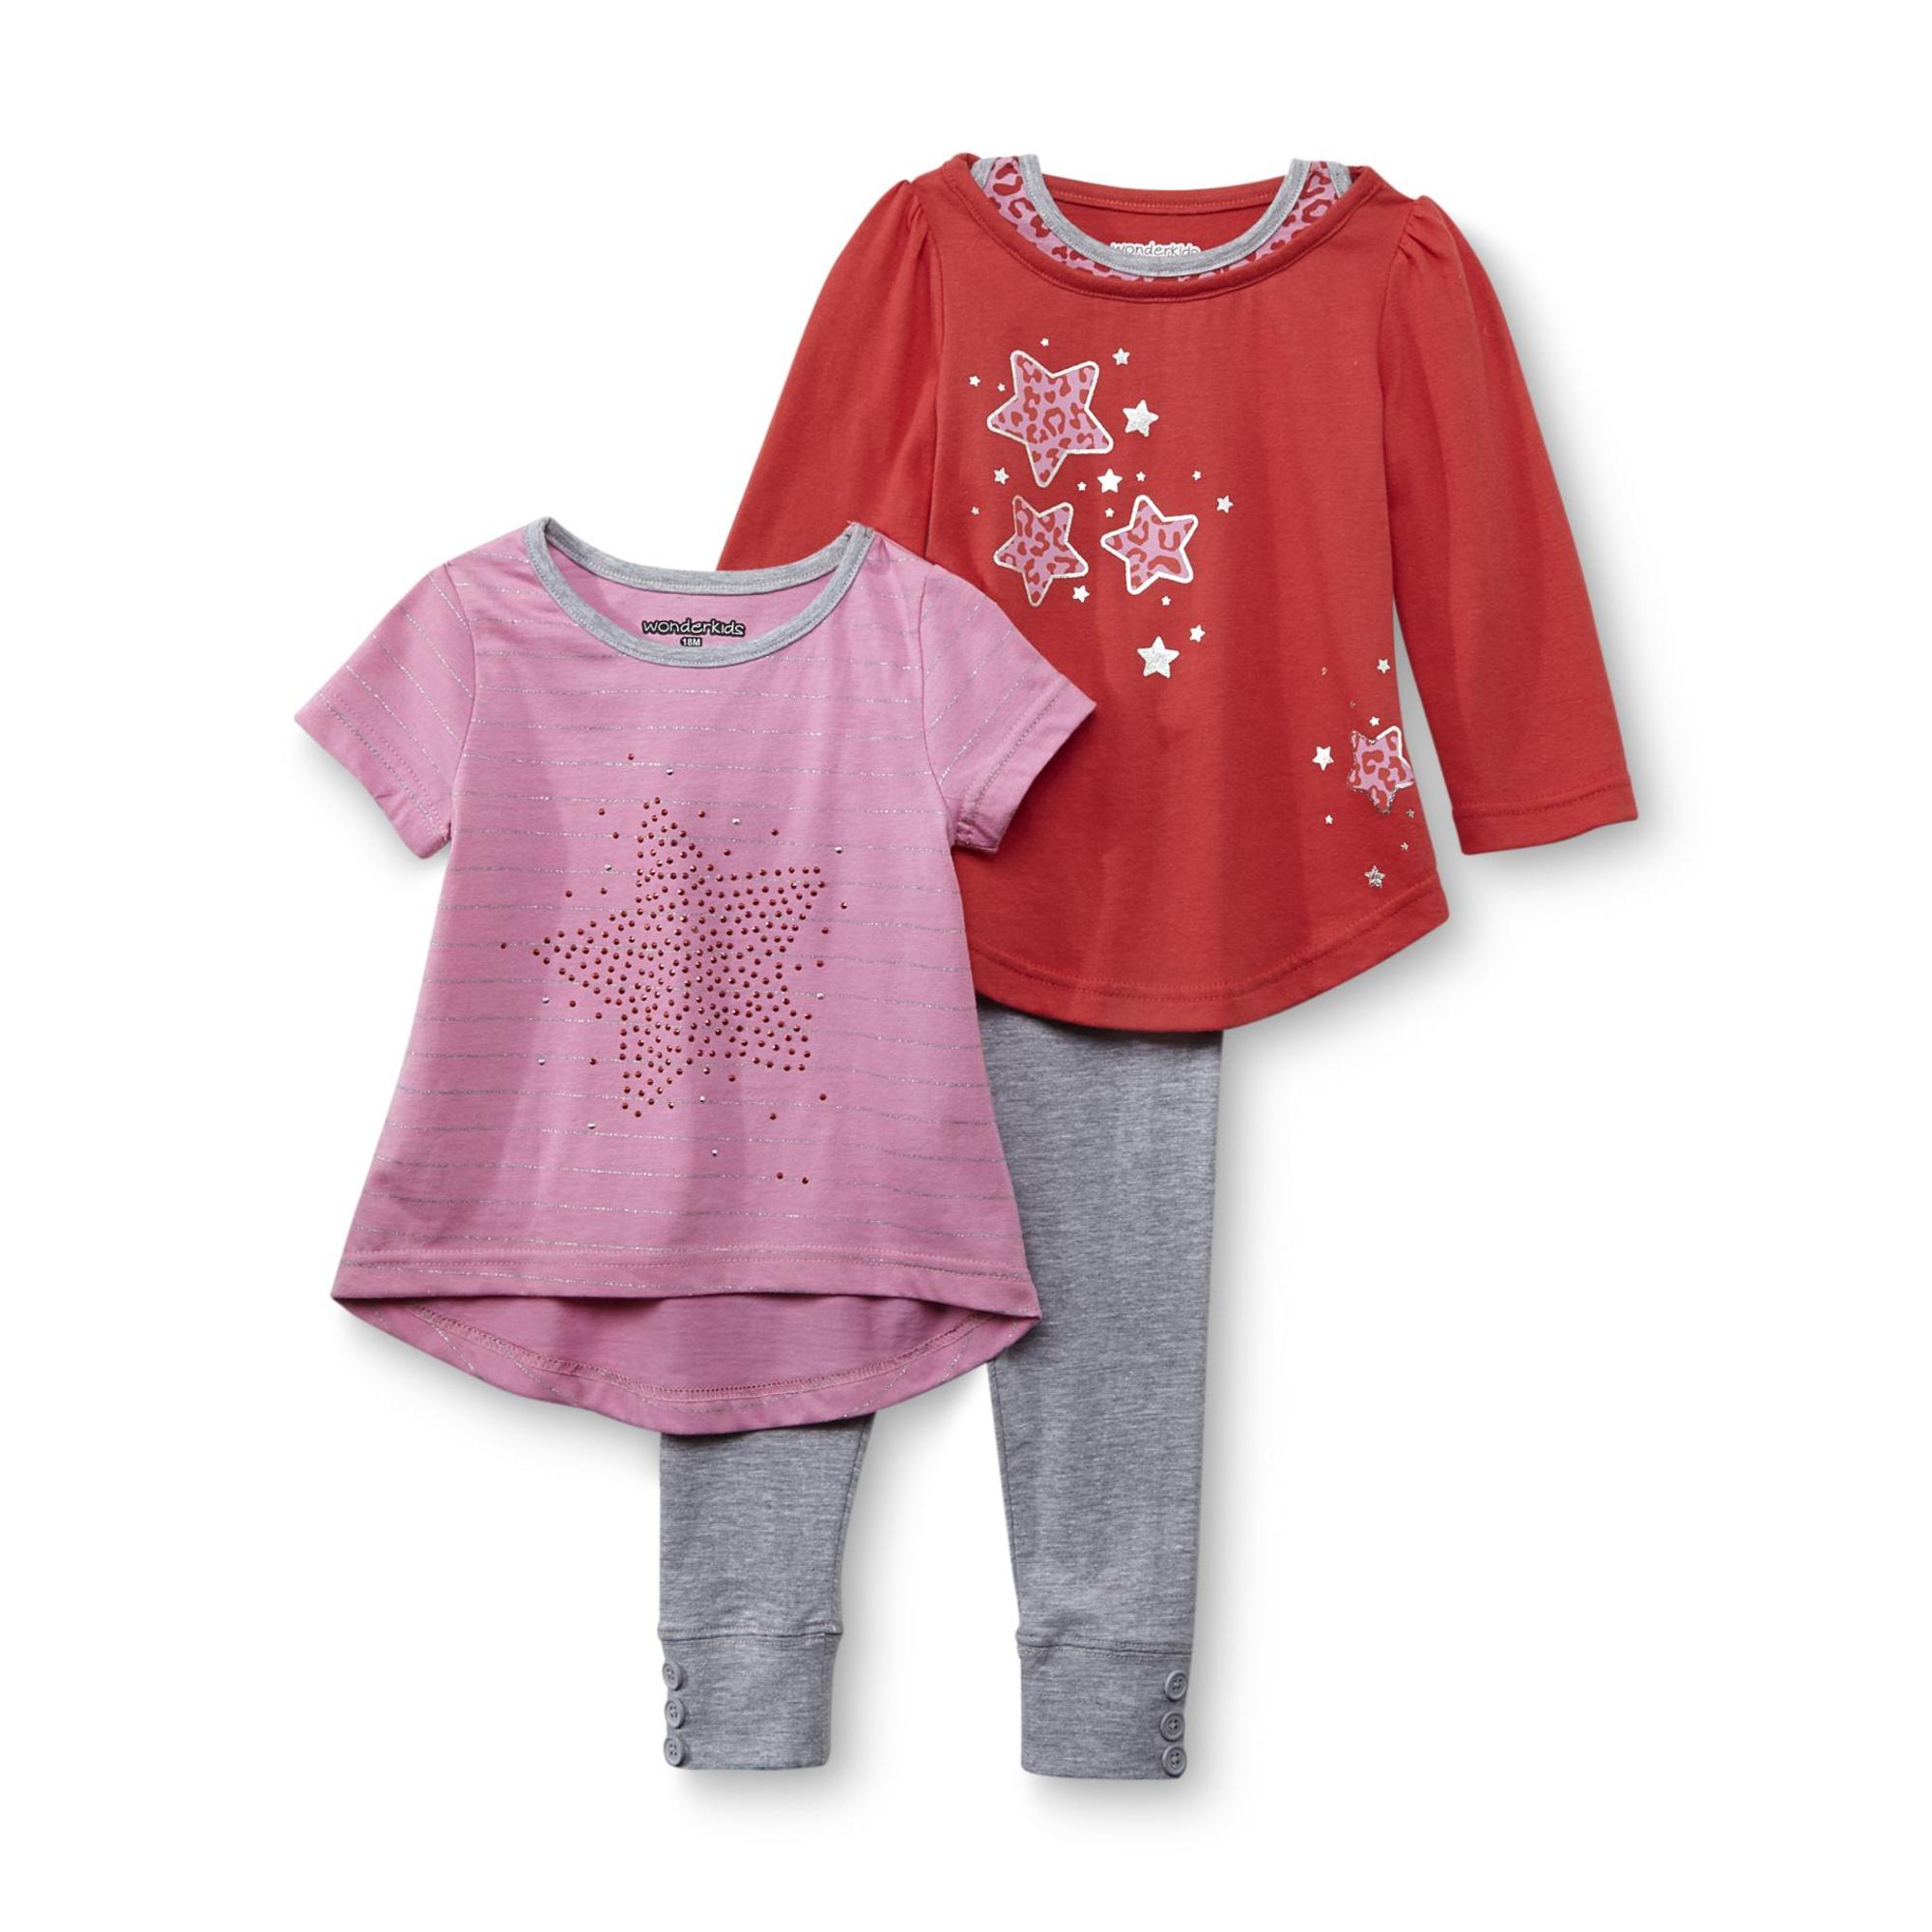 WonderKids Infant & Toddler Girl's T-Shirt  Long-Sleeve Top & Leggings - Star